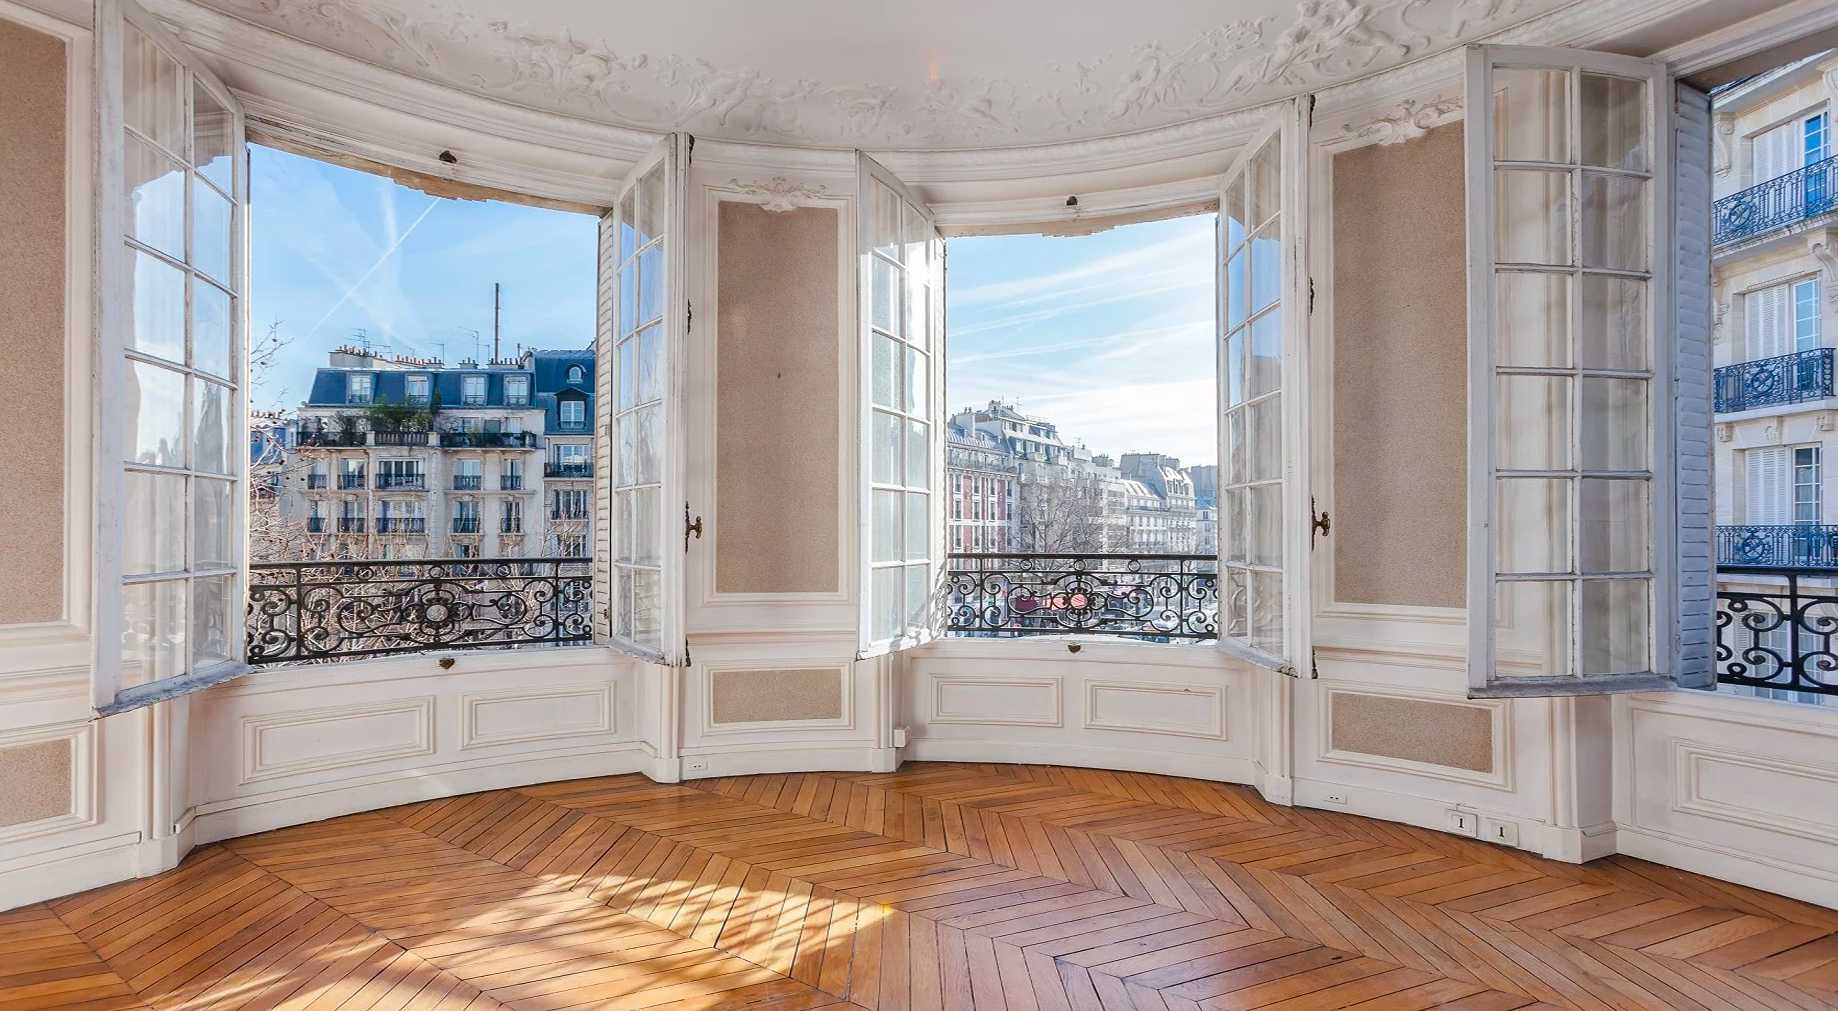 Un architecte vous conseille lorsque vous êtes sur le point d’acheter un bien immobilier à Lyon